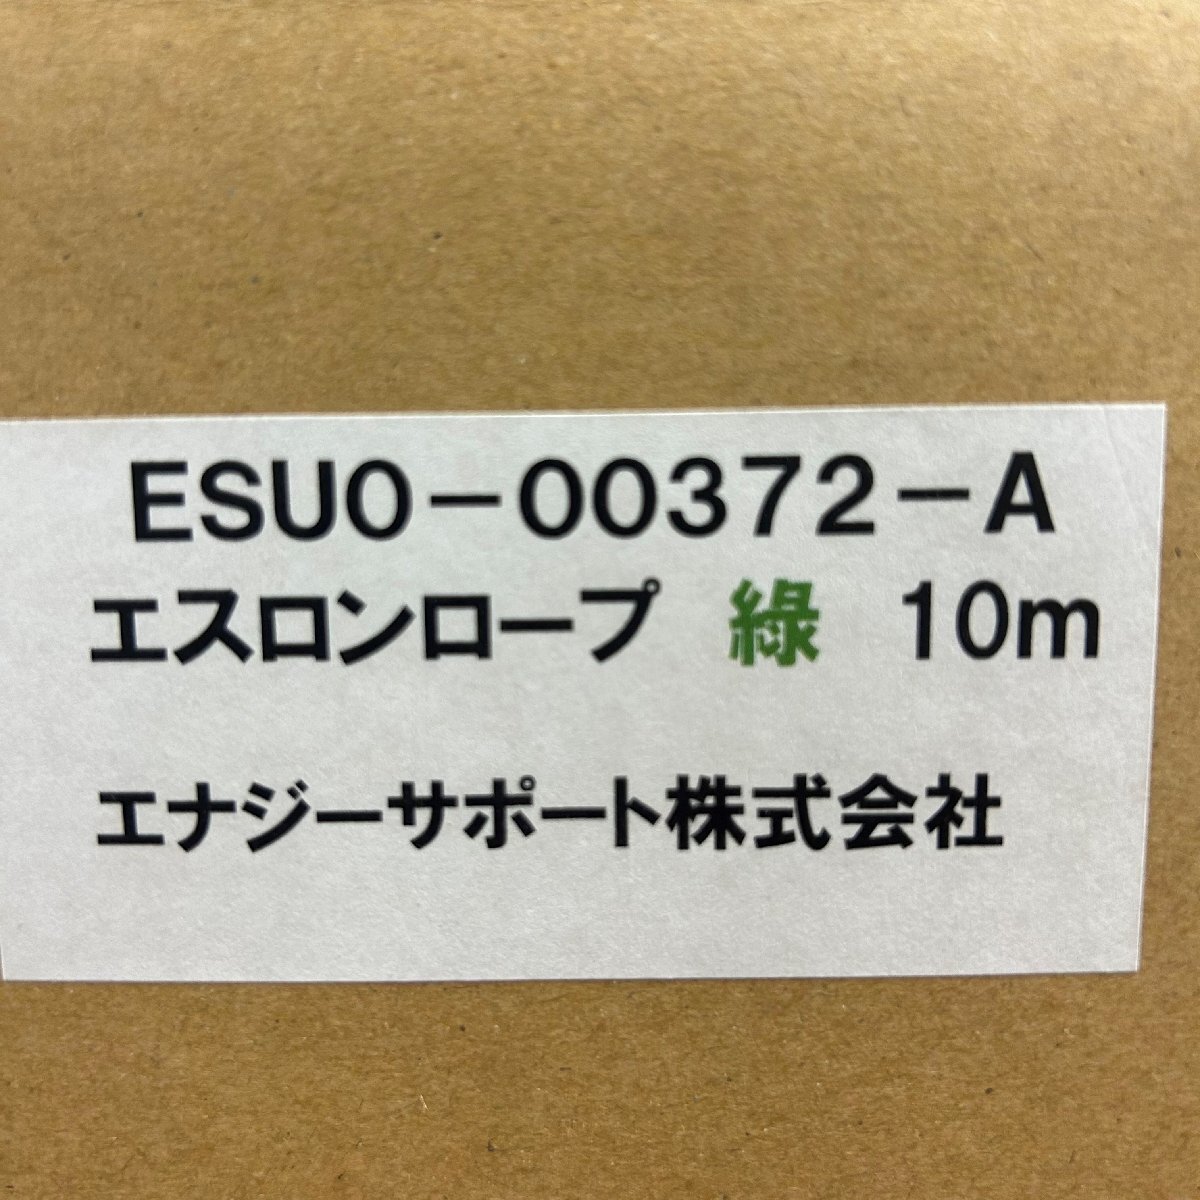 ◎エナジーサポート エスロンロープ 赤(ESUO-00356-A) 緑(ESUO-00372-A) 各6台ずつ 計12台セット_画像2